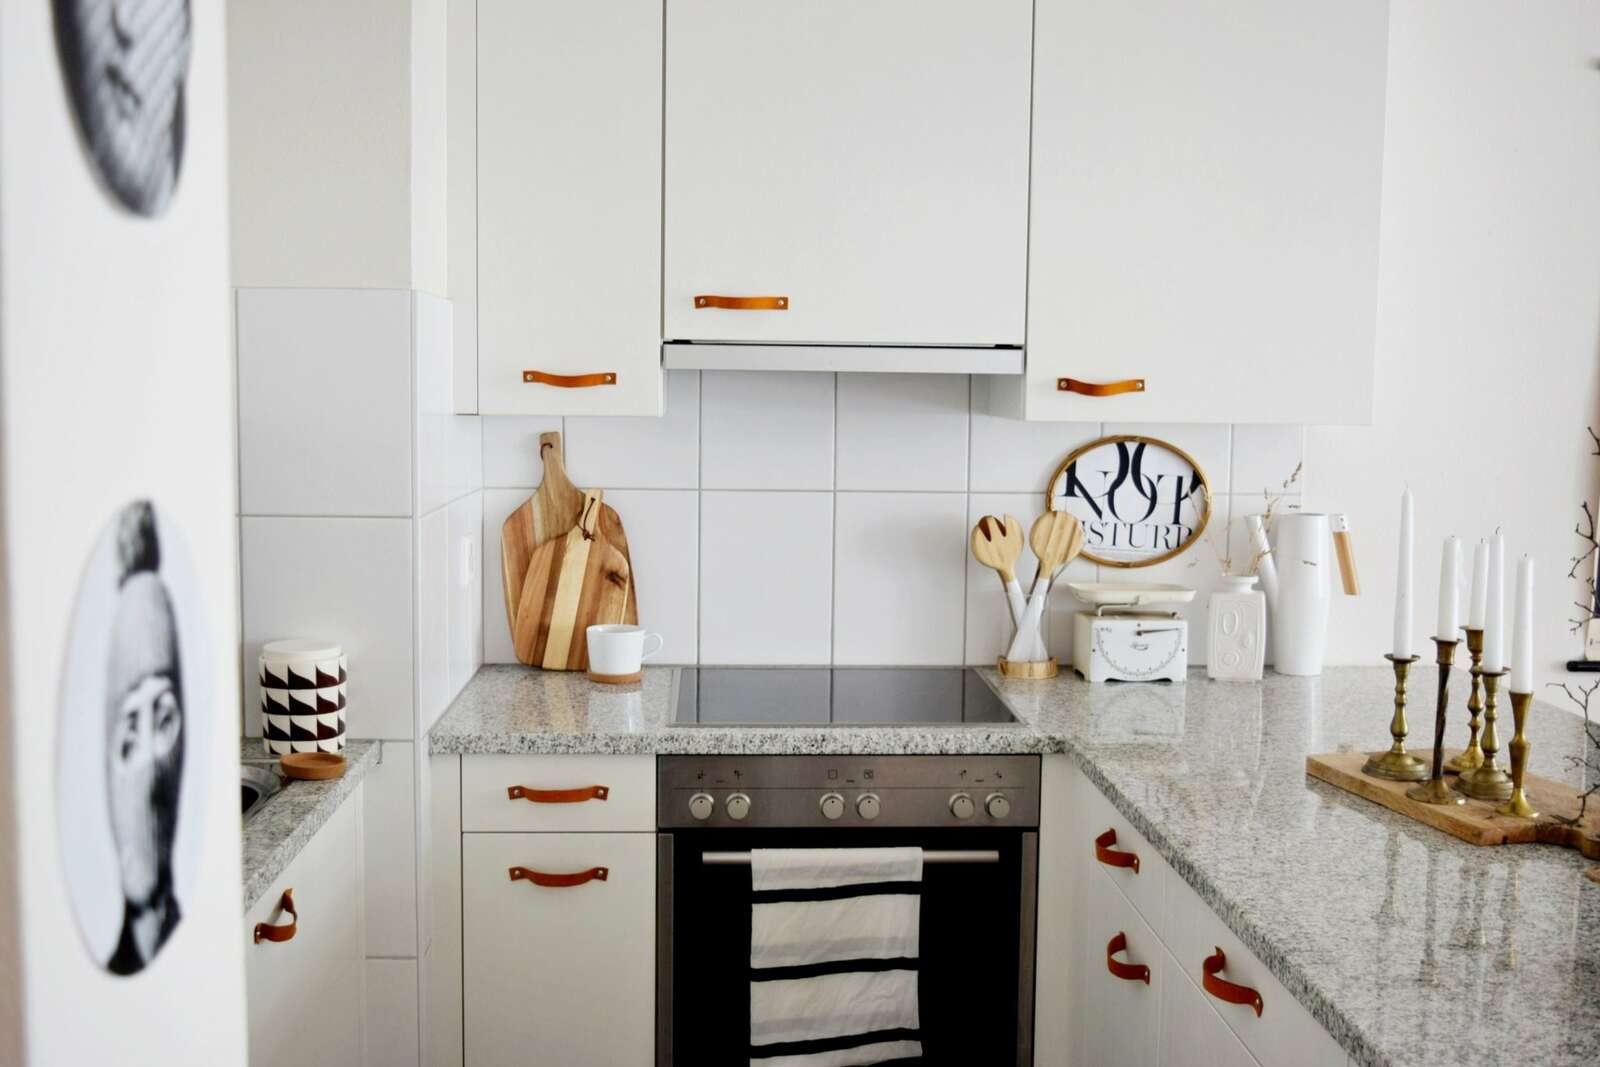 #kitchen #kitchendecor #homedecor #decoration